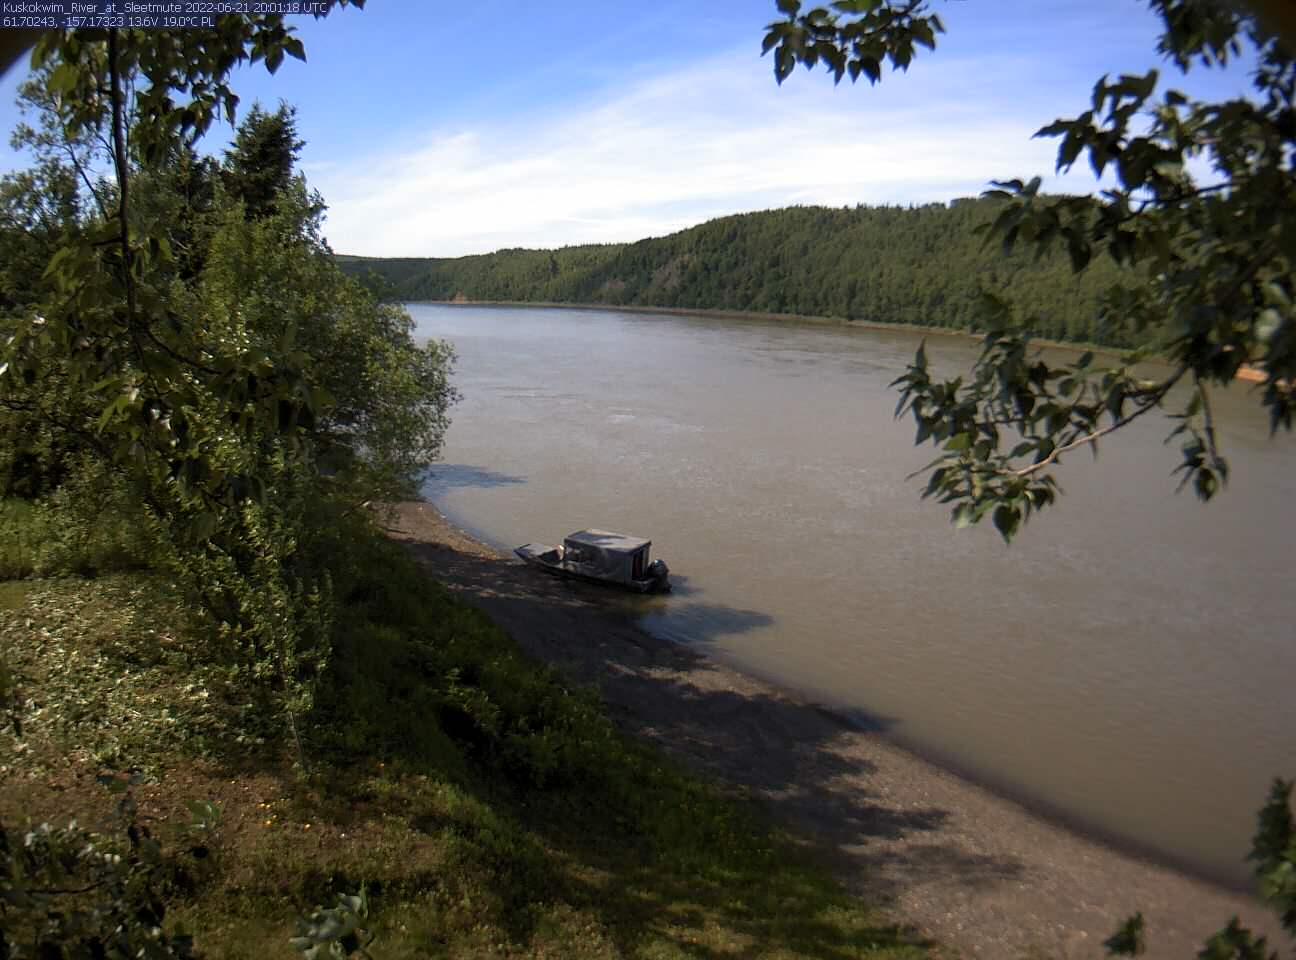 Kuskokwim_River_at_Sleetmute_20220621200119.jpg